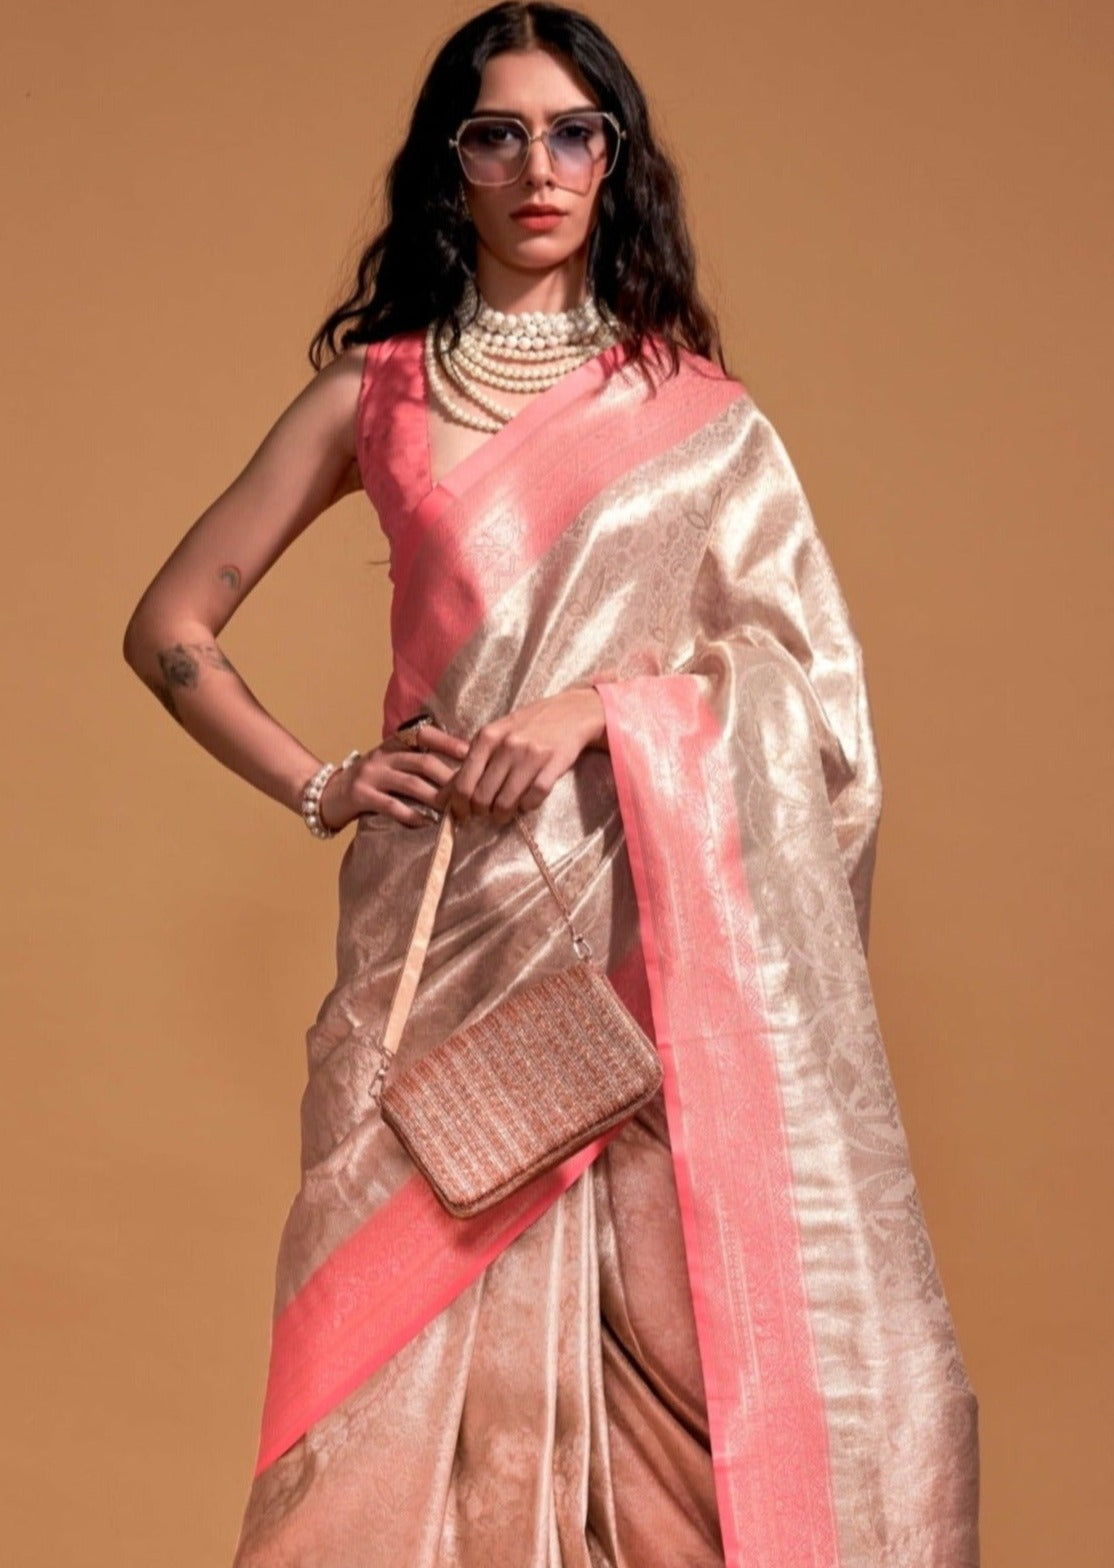 Dual tone pure handloom kanjivaram silk zari work wedding saree online usa uk sale.